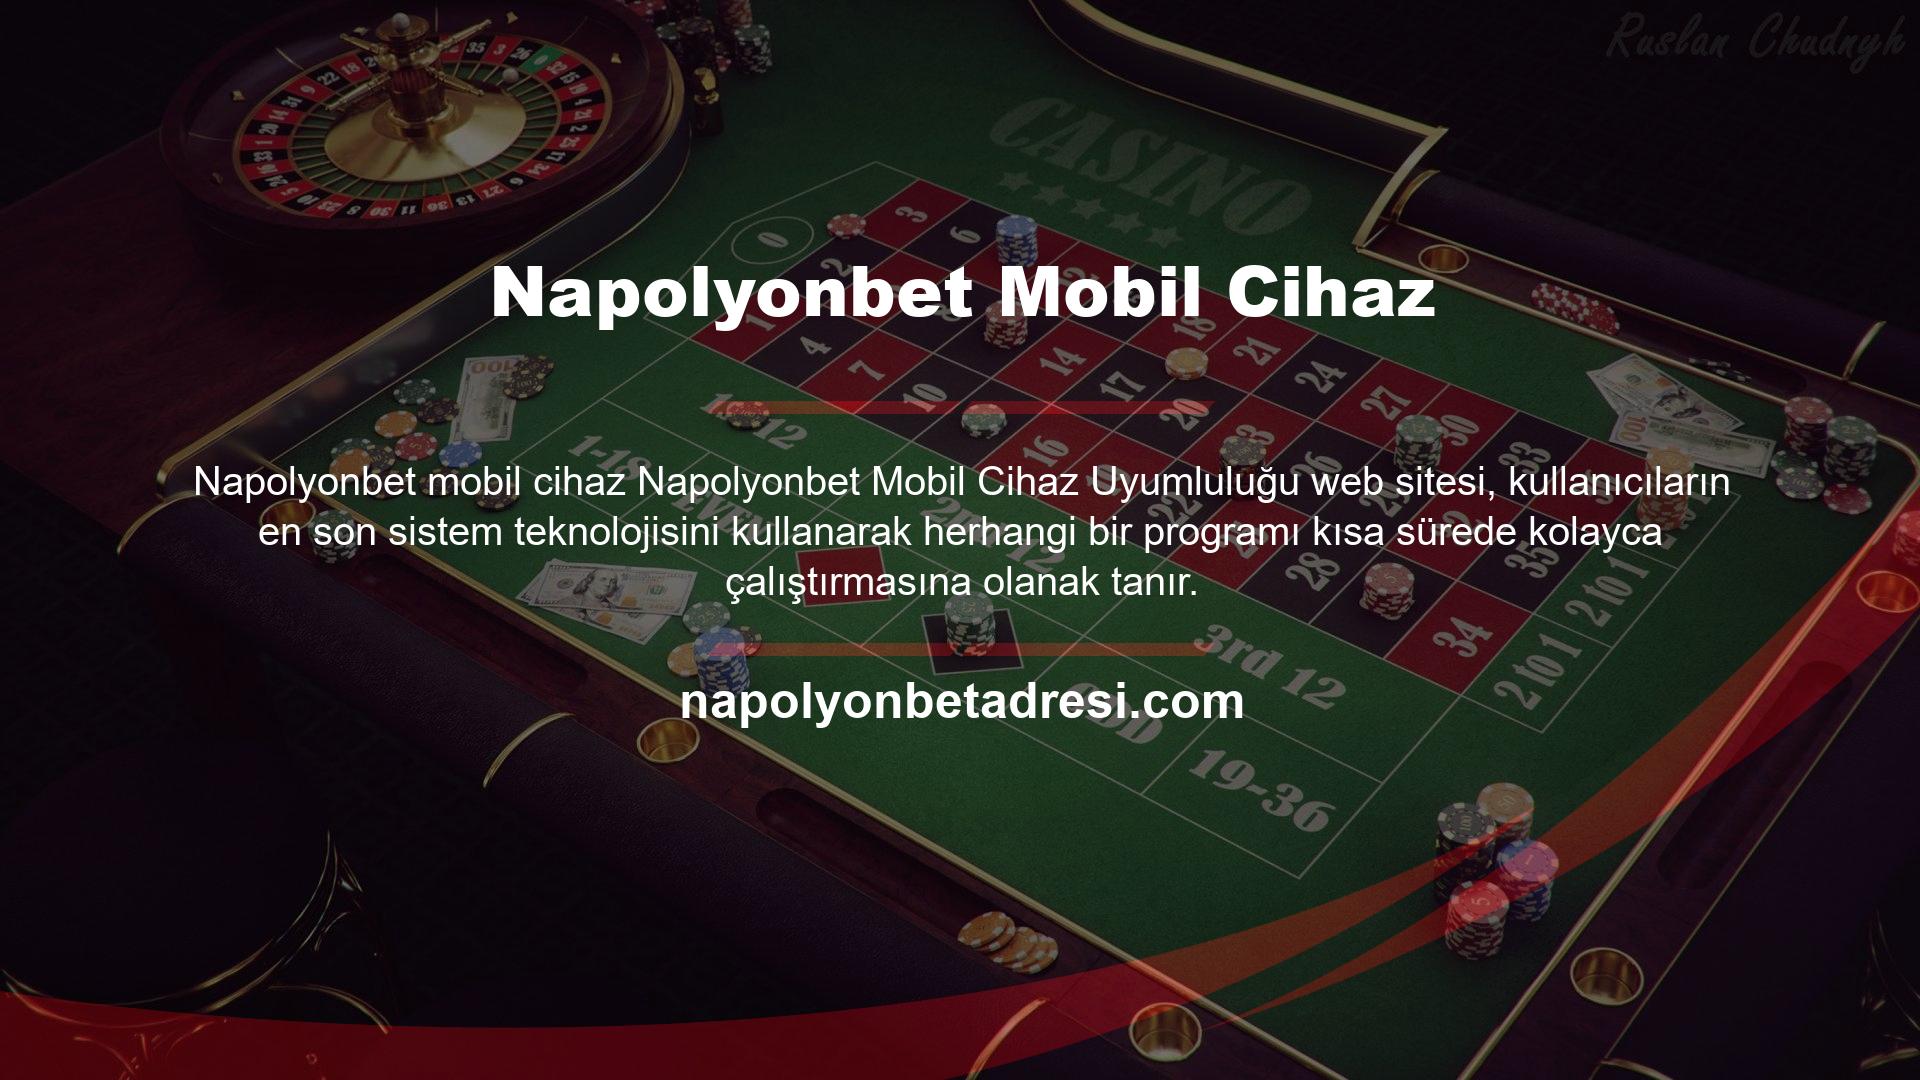 Bu nedenle online casino oyunlarından veya casino oyunlarından güvenli para kazanmak isteyenler için bir seçenektir